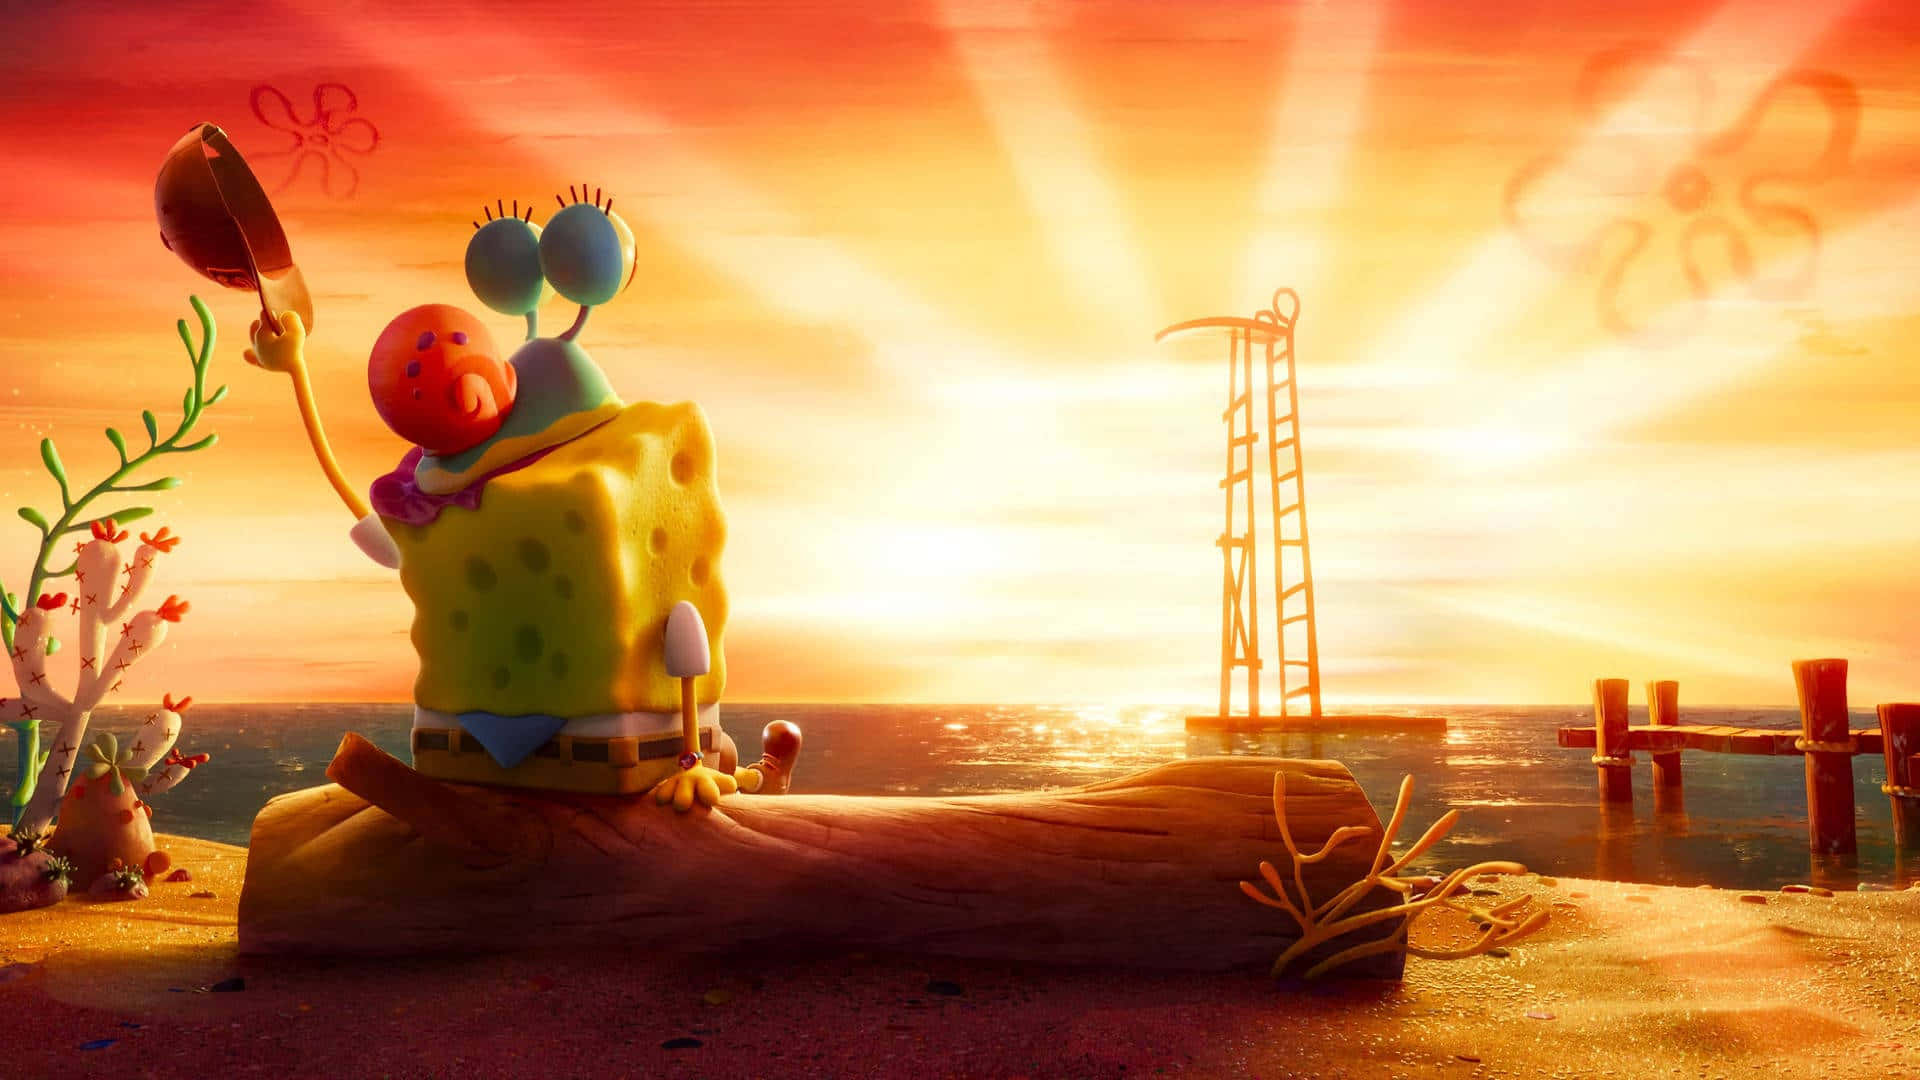 Sfondoestetico Di Spongebob Per Illuminare La Tua Giornata